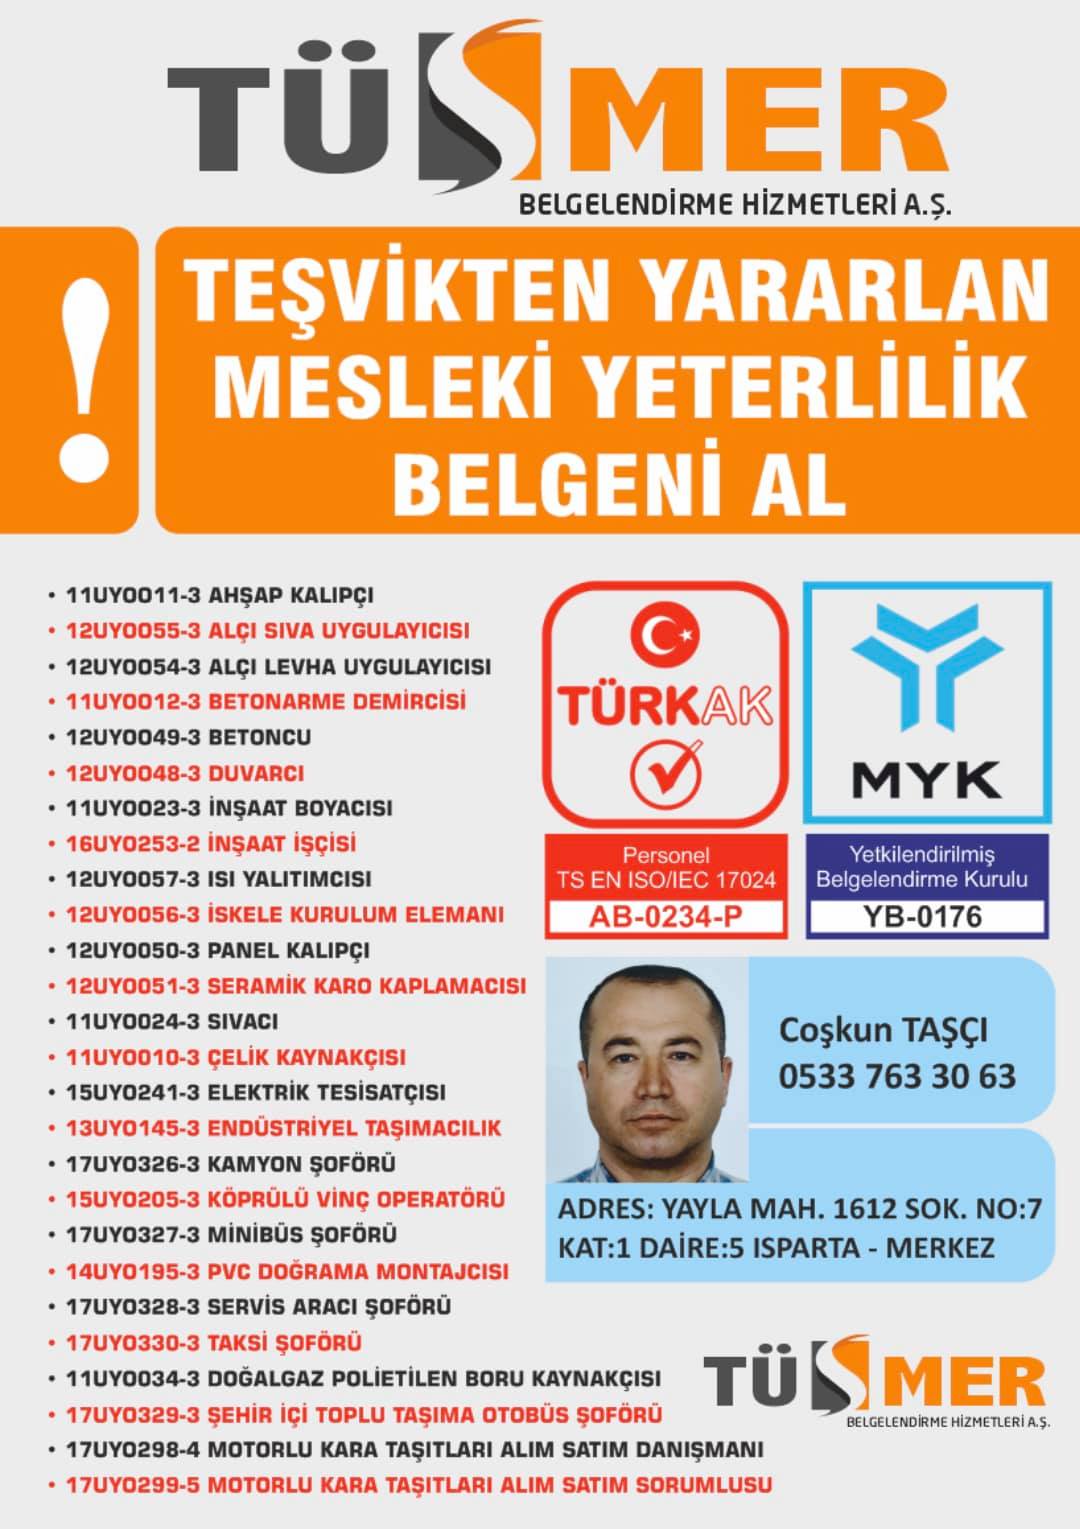 MYK MESLEKİ YETERLİLİK BELGESİ Hacımimi Beyoğlu İstanbul